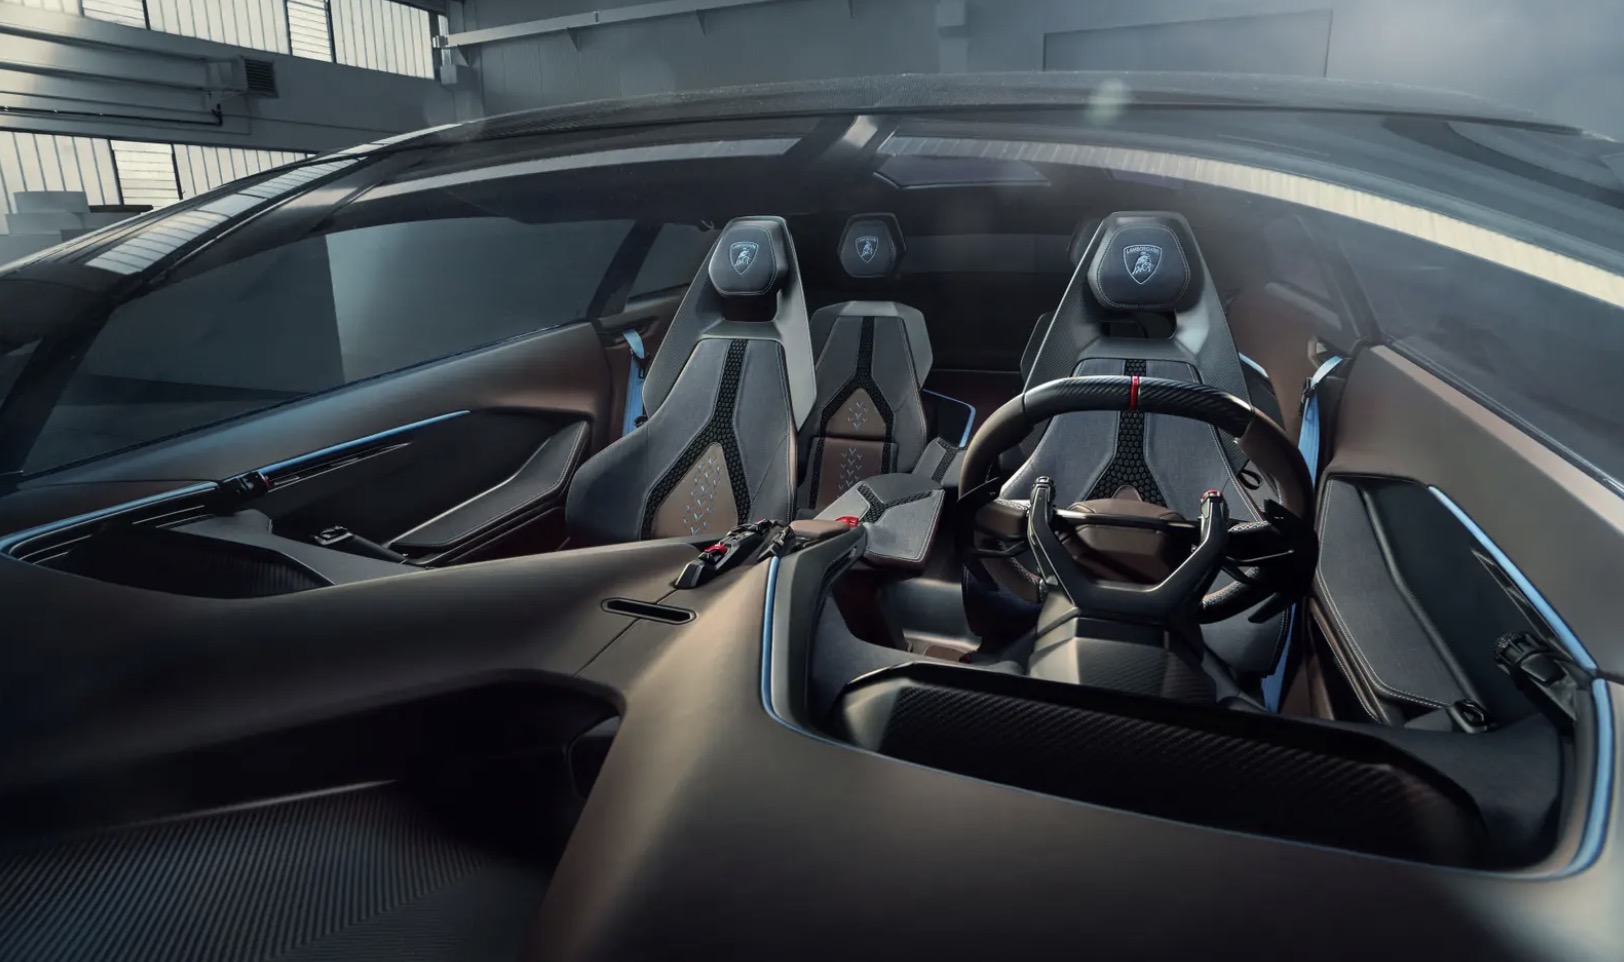 Thiết kế của mẫu xe điện mới mang phong cách của các tàu vũ trụ. Ảnh: Lamborghini